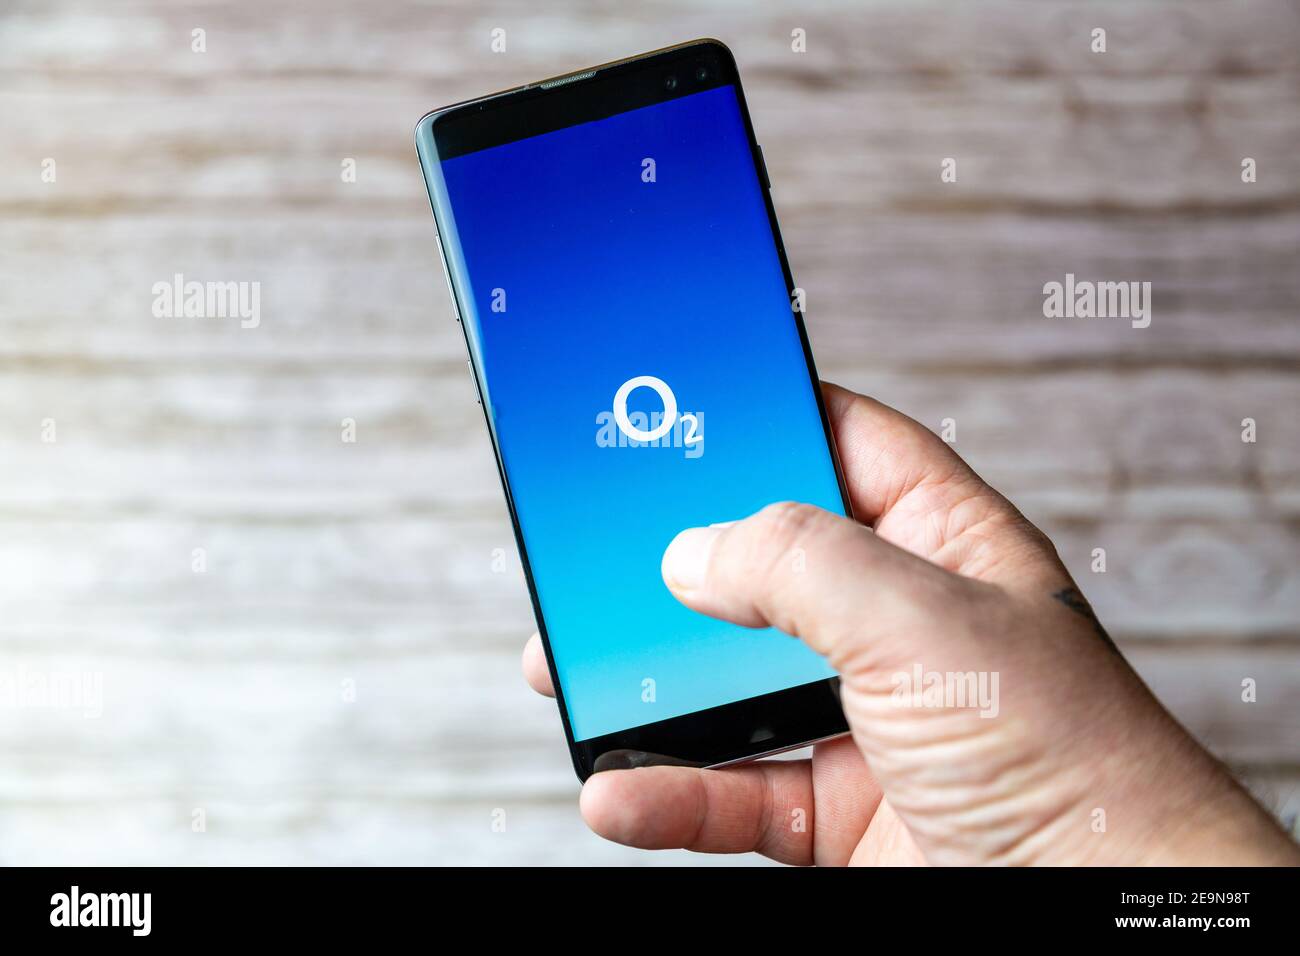 Un telefono cellulare o un telefono cellulare in attesa che mostra L'applicazione O2 Mobile viene aperta sullo schermo Foto Stock